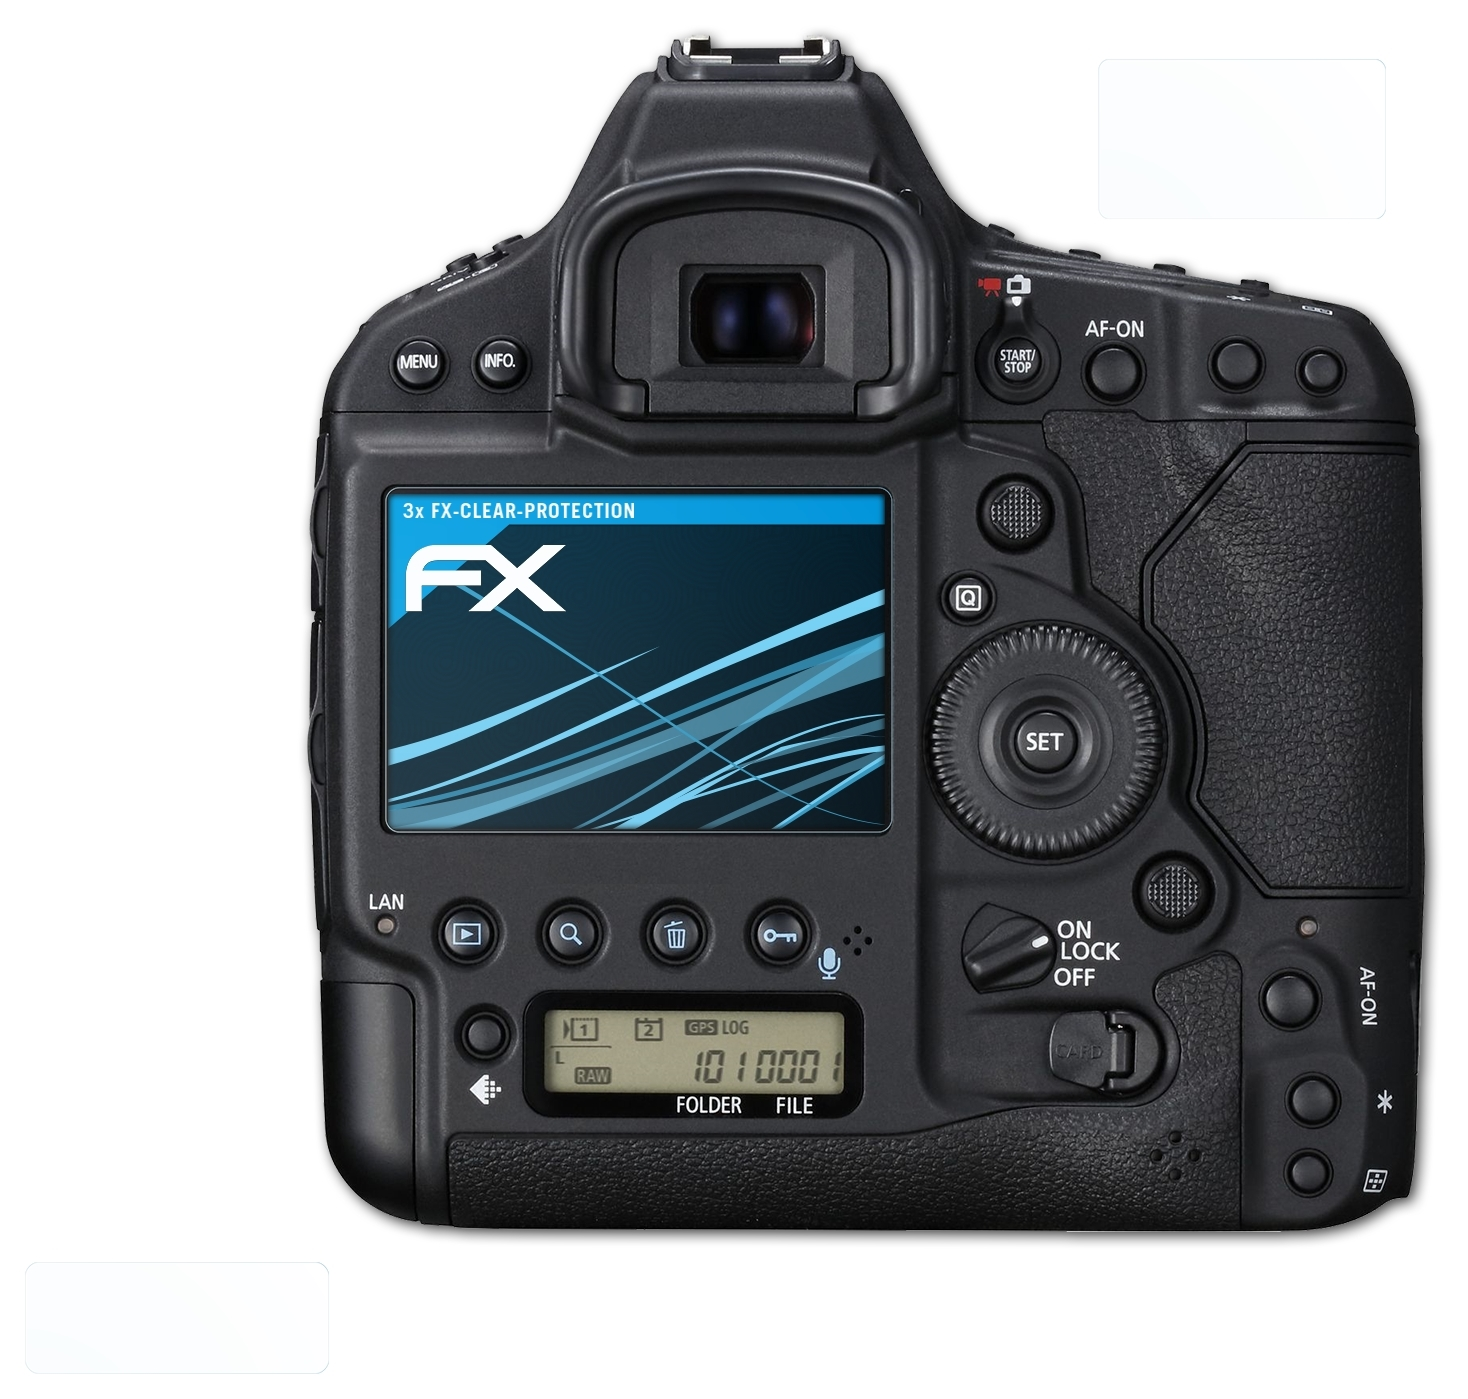 Mark 3x FX-Clear III) Displayschutz(für EOS-1D X ATFOLIX Canon